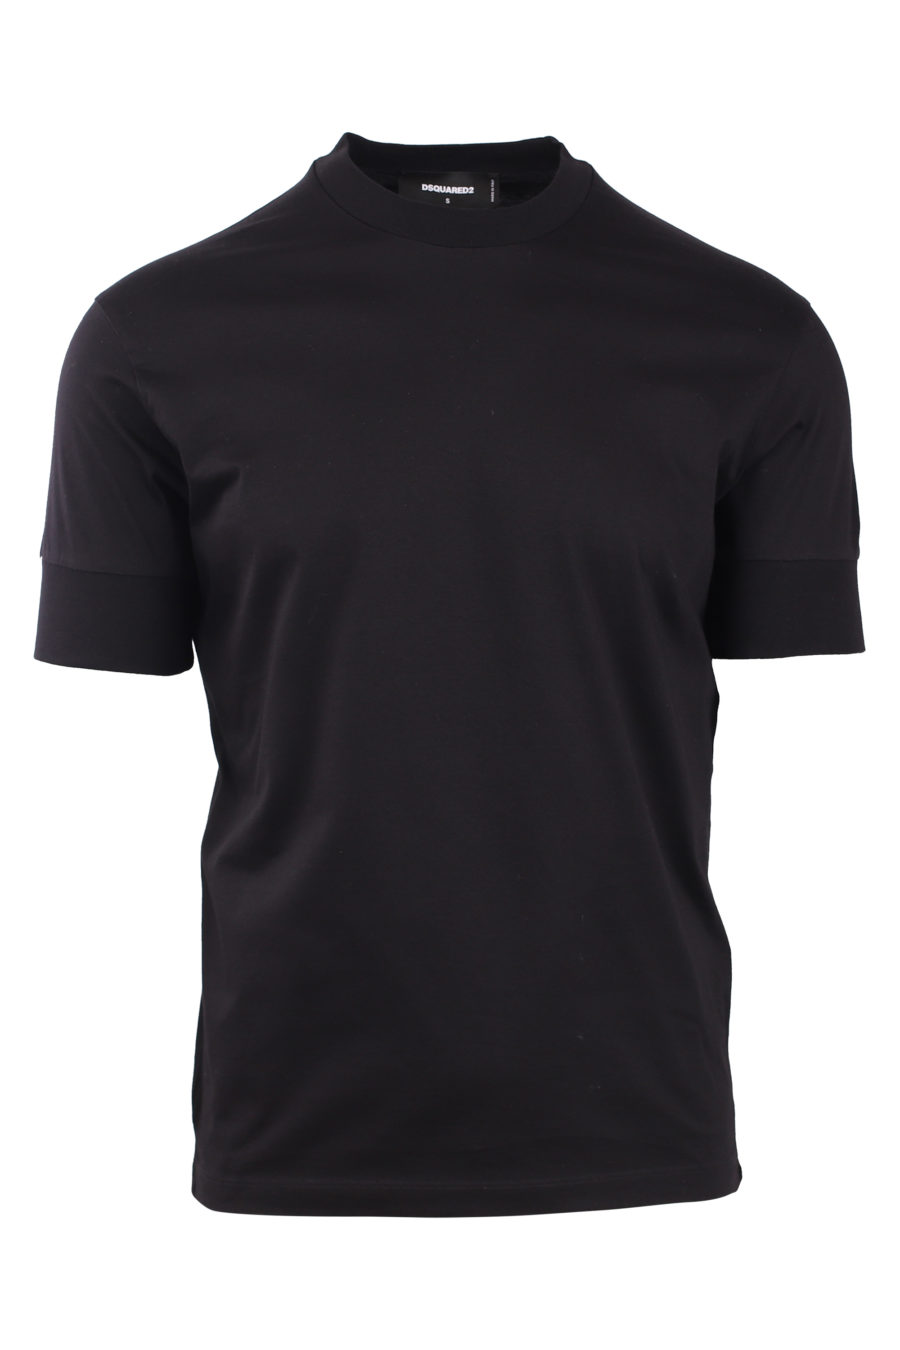 Camiseta negra "ibra" - IMG 0791